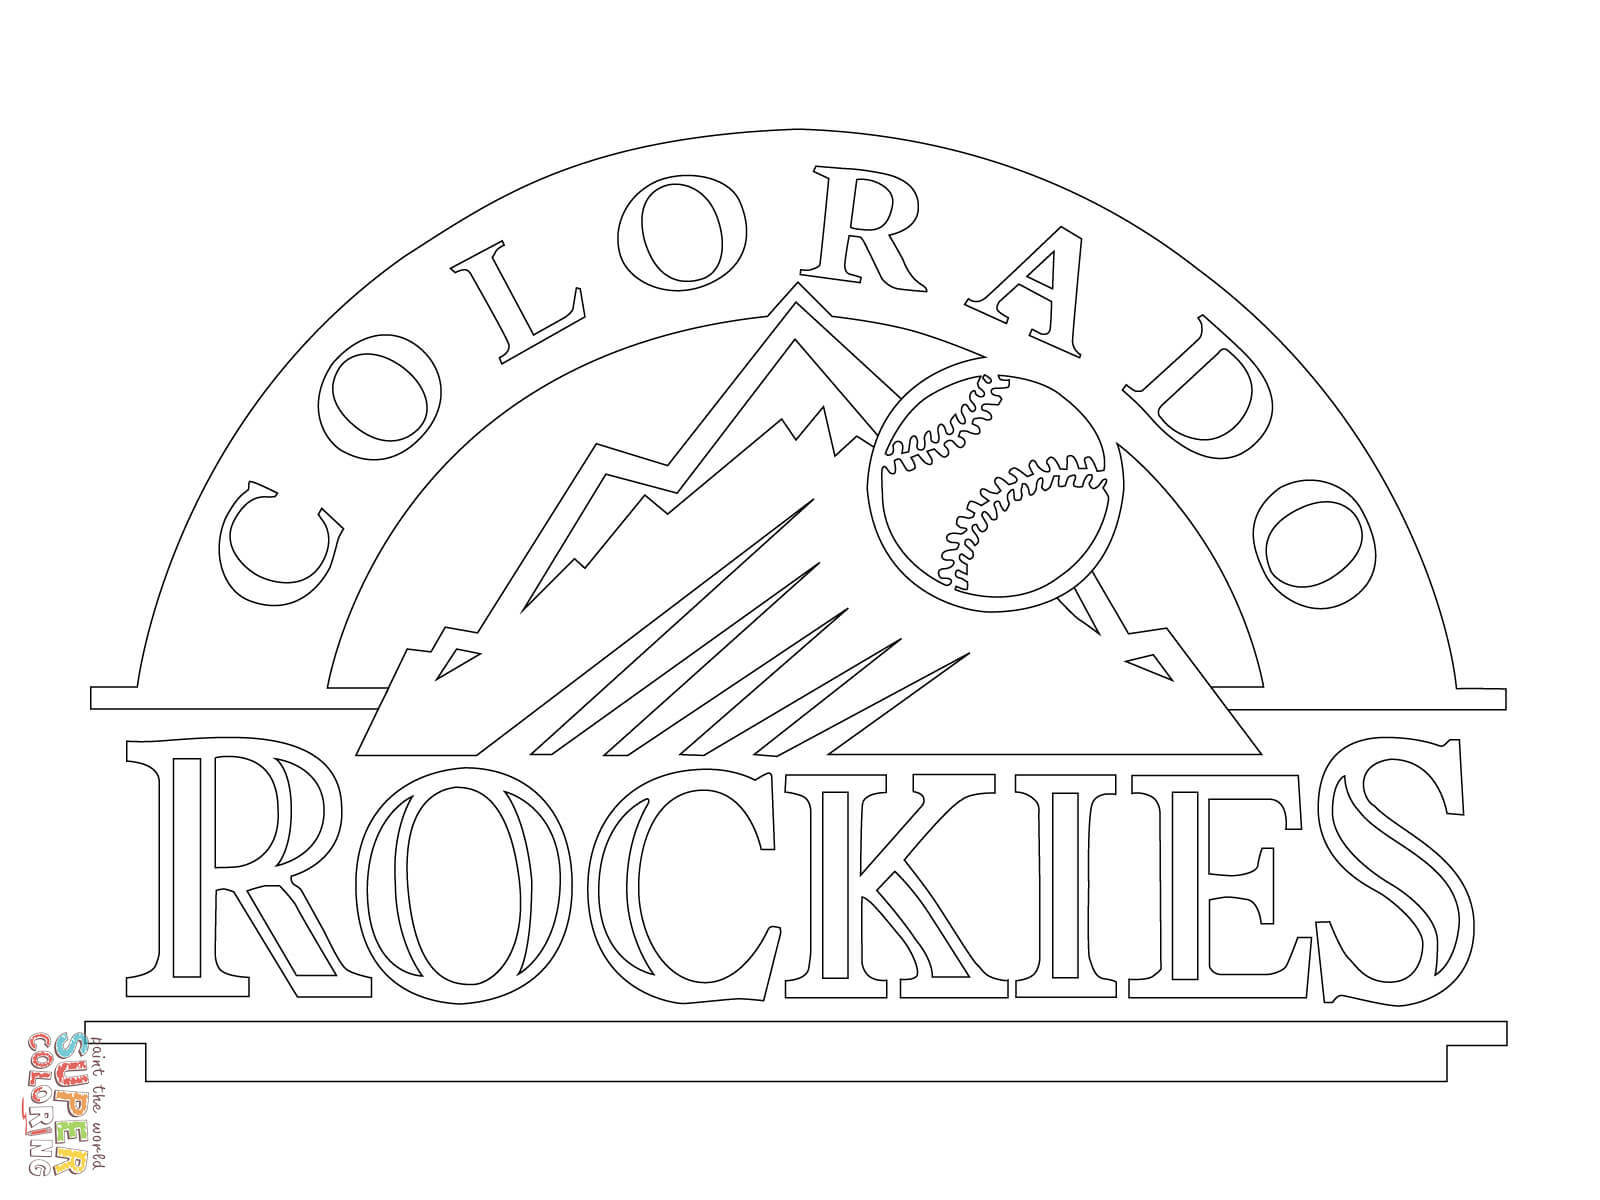 Colorado Rockies Logo coloring page | Free Printable Coloring Pages